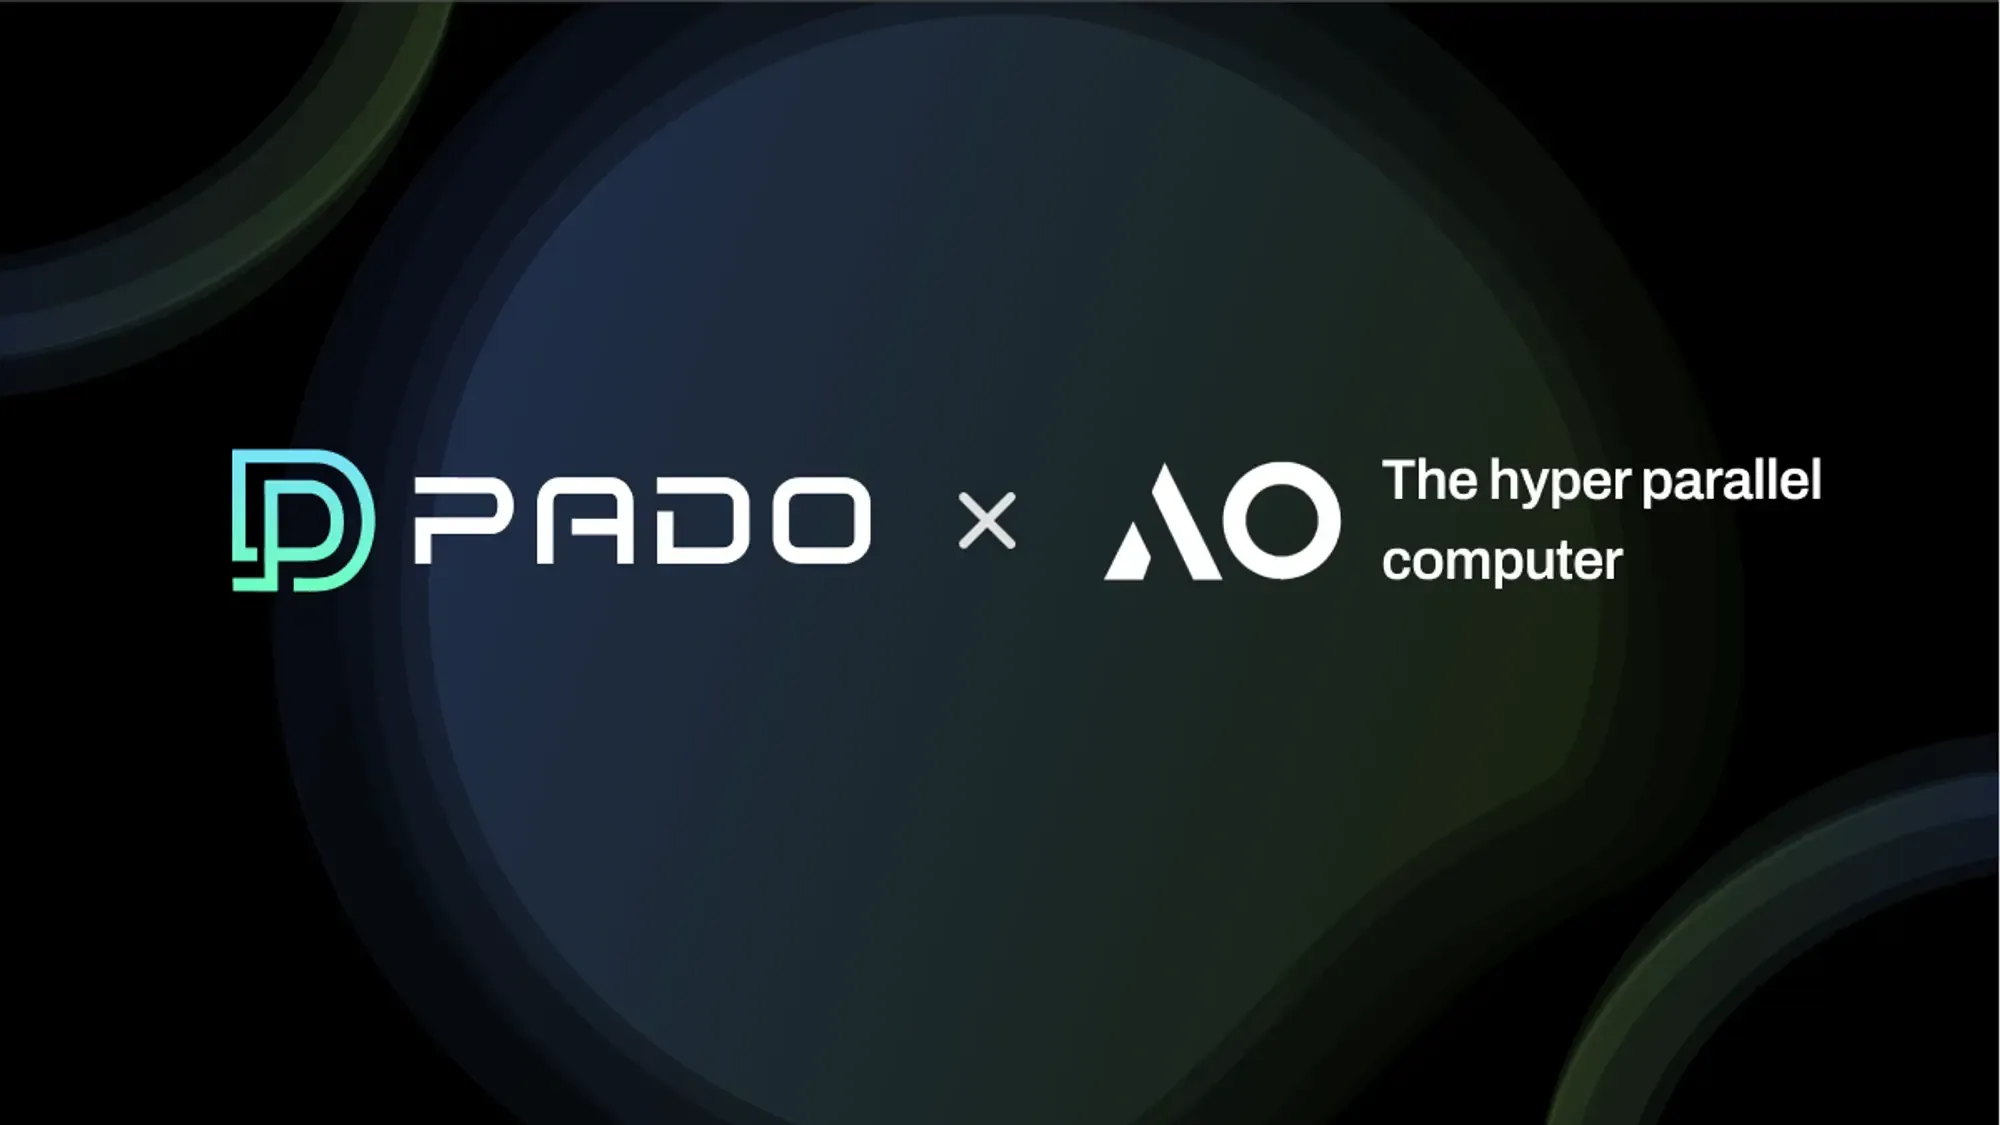 在 AO 超并行计算机上启用 PADO 可验证机密计算